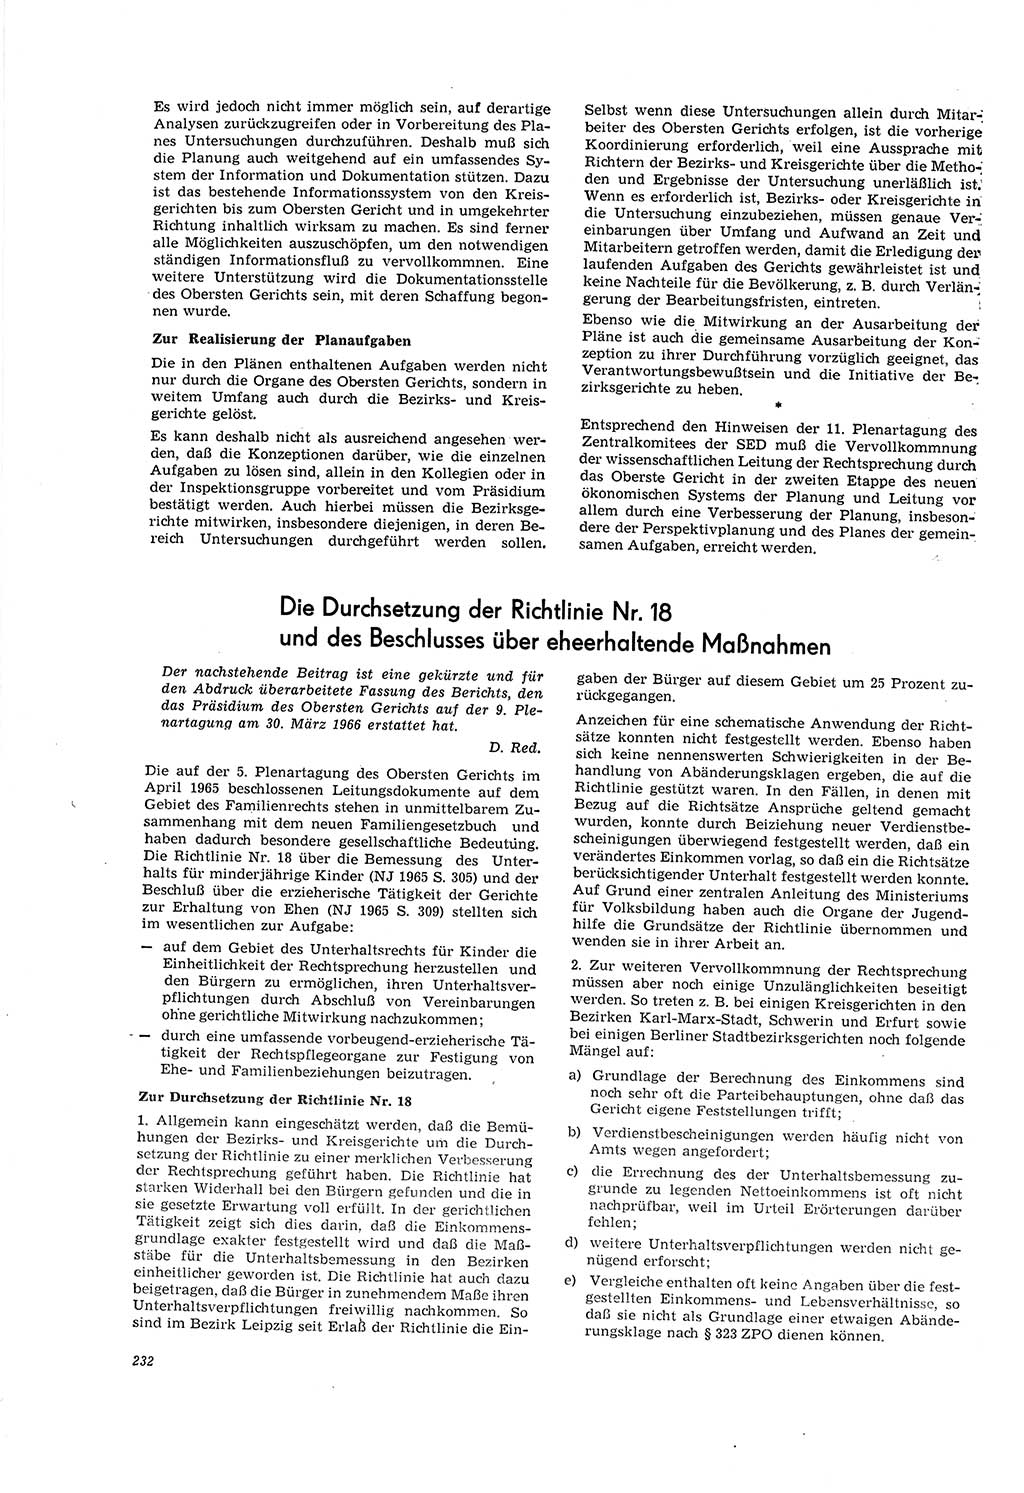 Neue Justiz (NJ), Zeitschrift für Recht und Rechtswissenschaft [Deutsche Demokratische Republik (DDR)], 20. Jahrgang 1966, Seite 232 (NJ DDR 1966, S. 232)